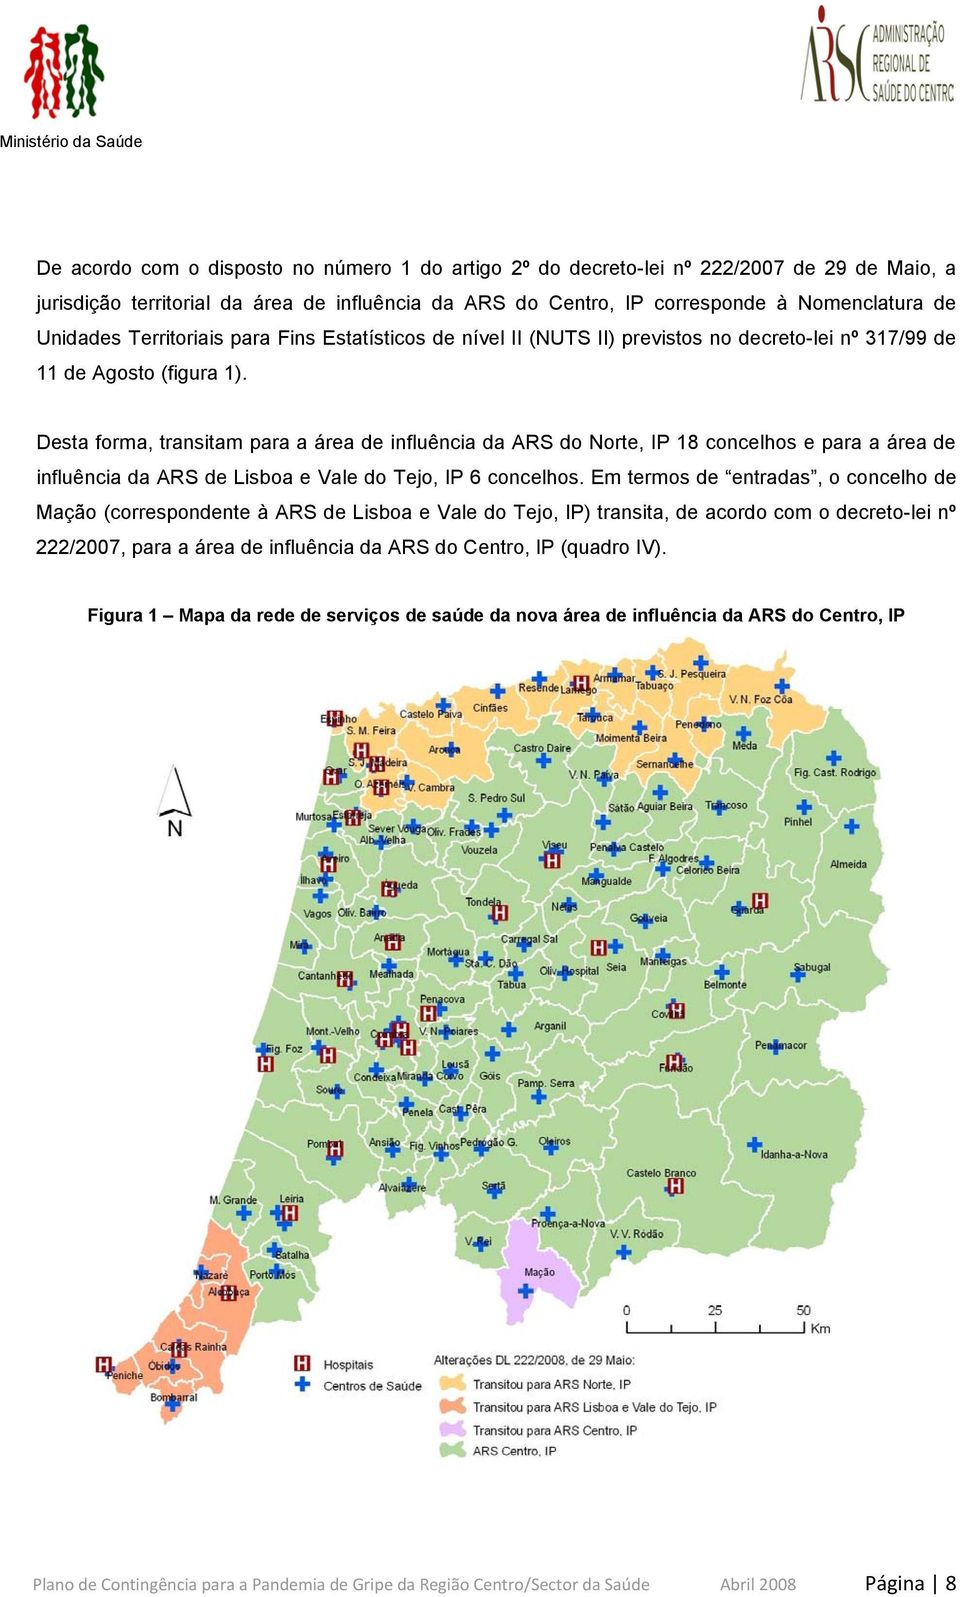 Desta forma, transitam para a área de influência da ARS do Norte, IP 18 concelhos e para a área de influência da ARS de Lisboa e Vale do Tejo, IP 6 concelhos.